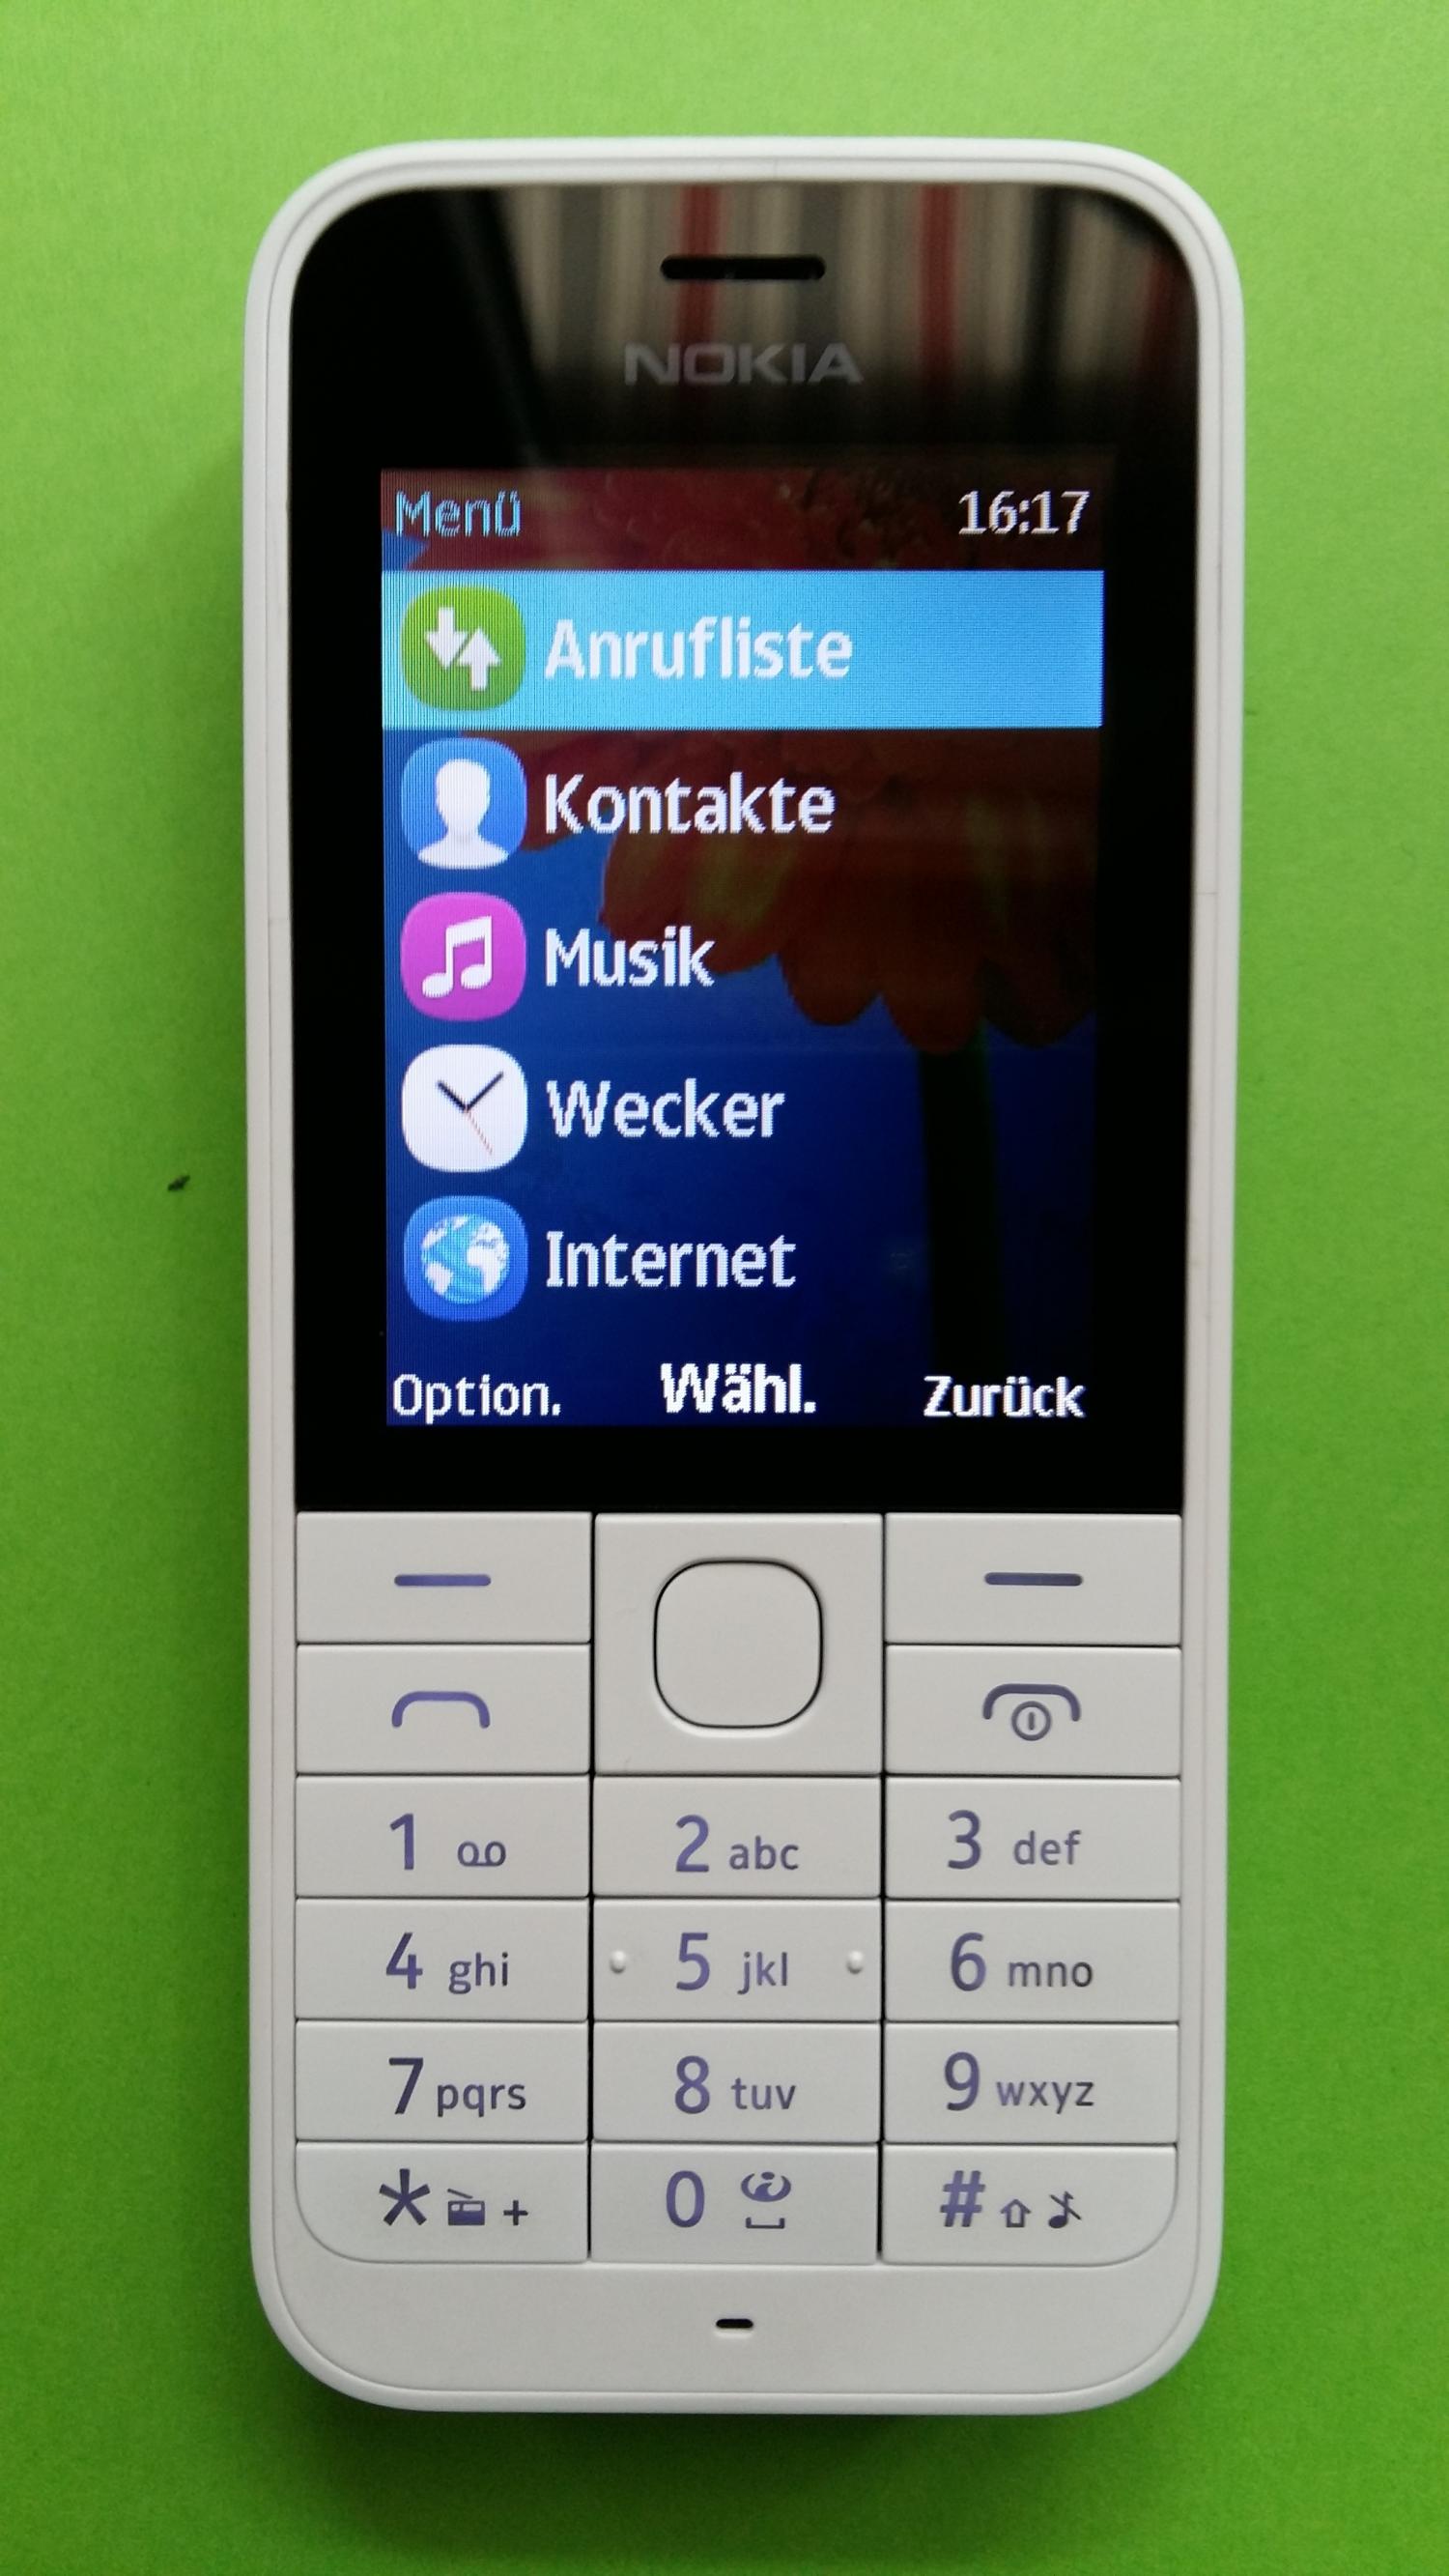 image-7323579-Nokia 220 (3)1.jpg